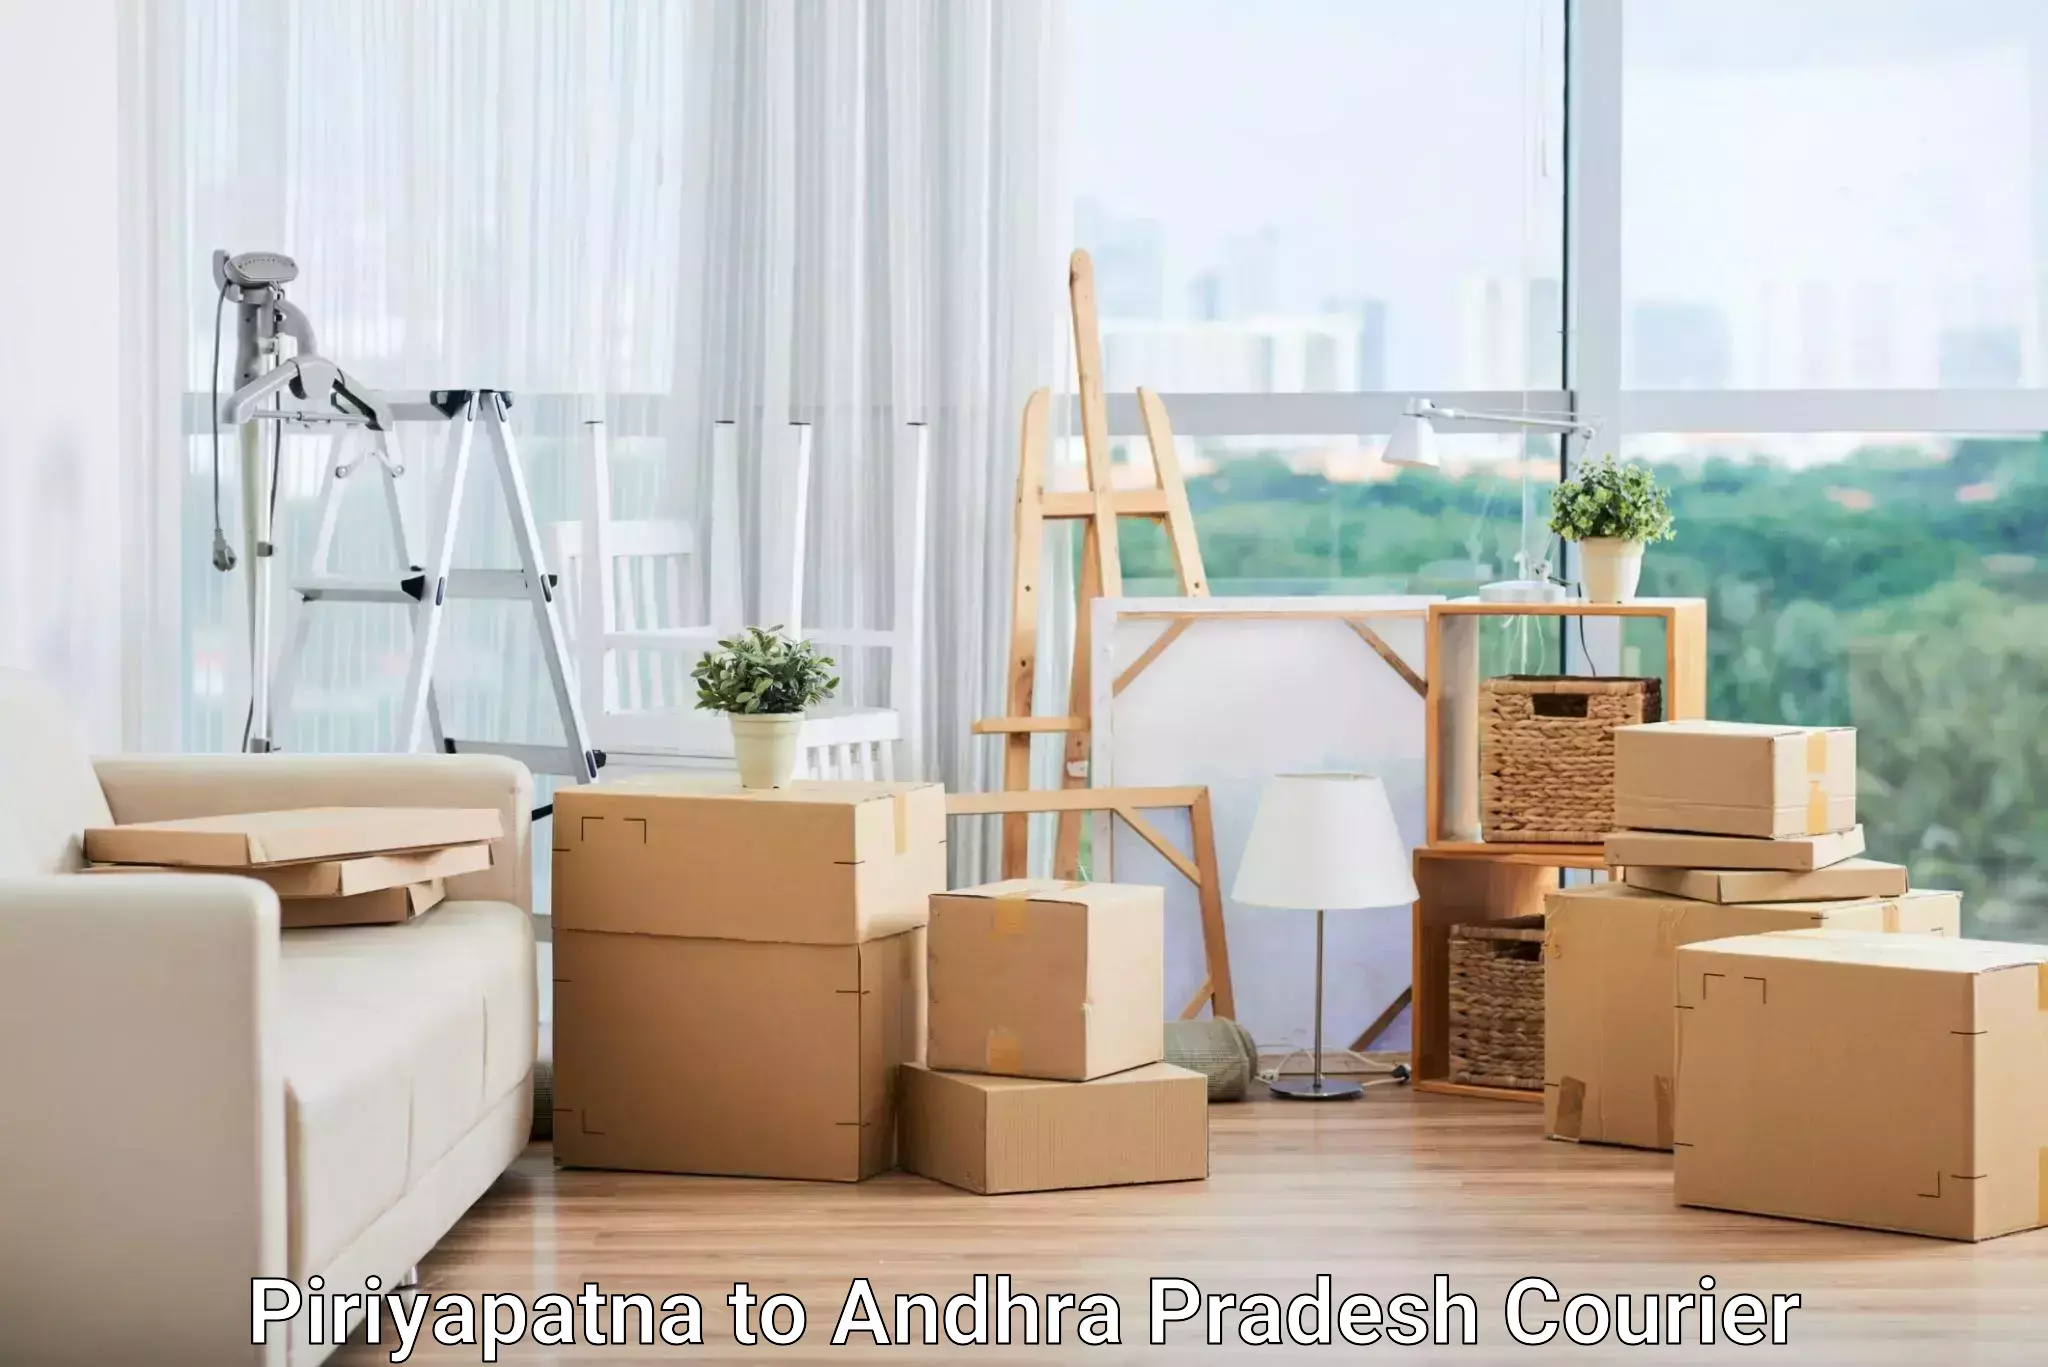 Express delivery capabilities Piriyapatna to Andhra Pradesh